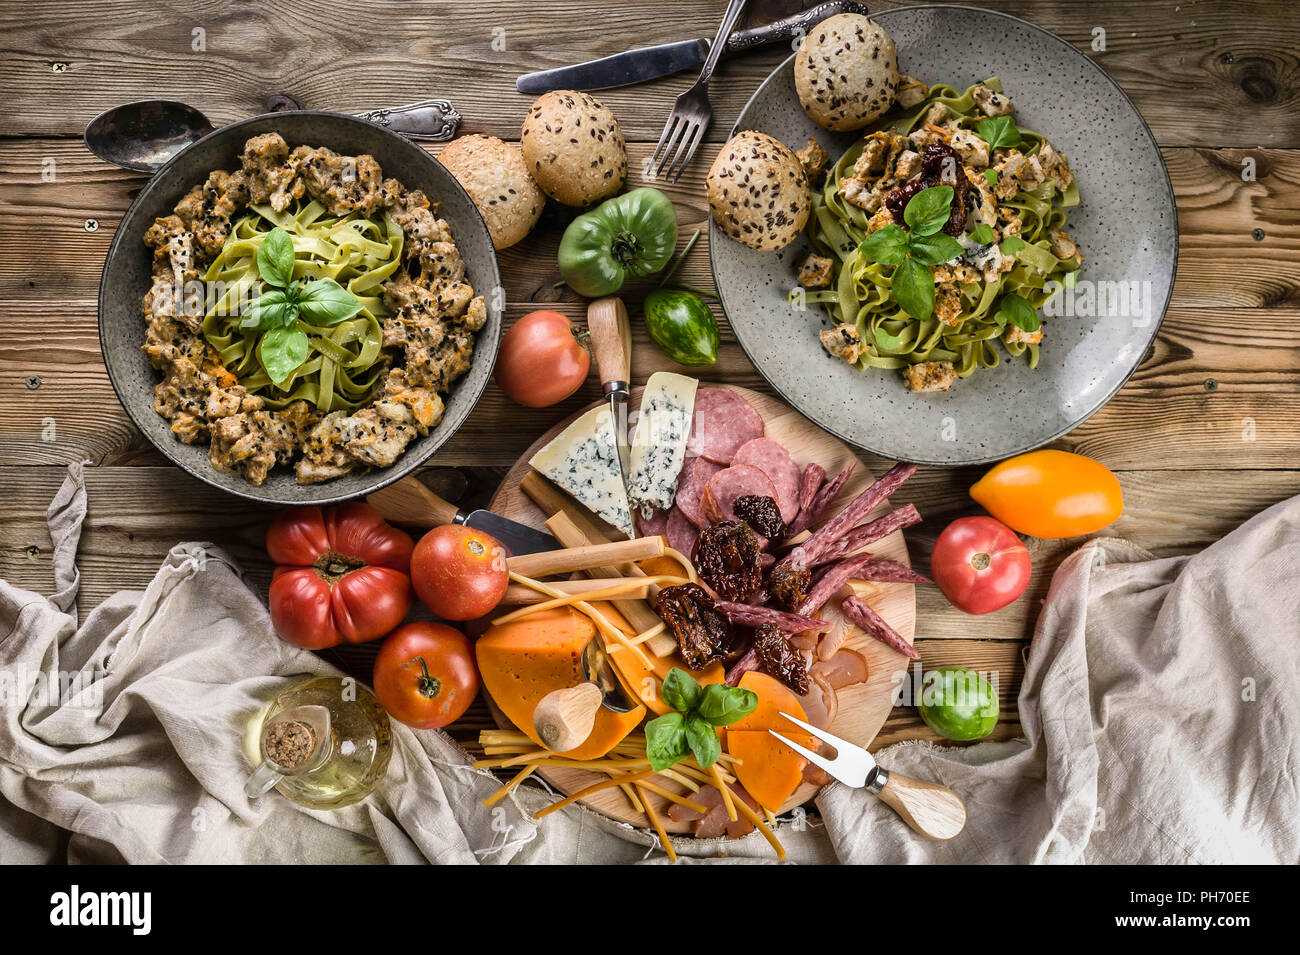 Pesto pâtes à la viande et aux champignons, une variété de fromages, viandes fumées et saucisses, légumes et herbes épicées sur une table en bois. Vue d'en haut Banque D'Images